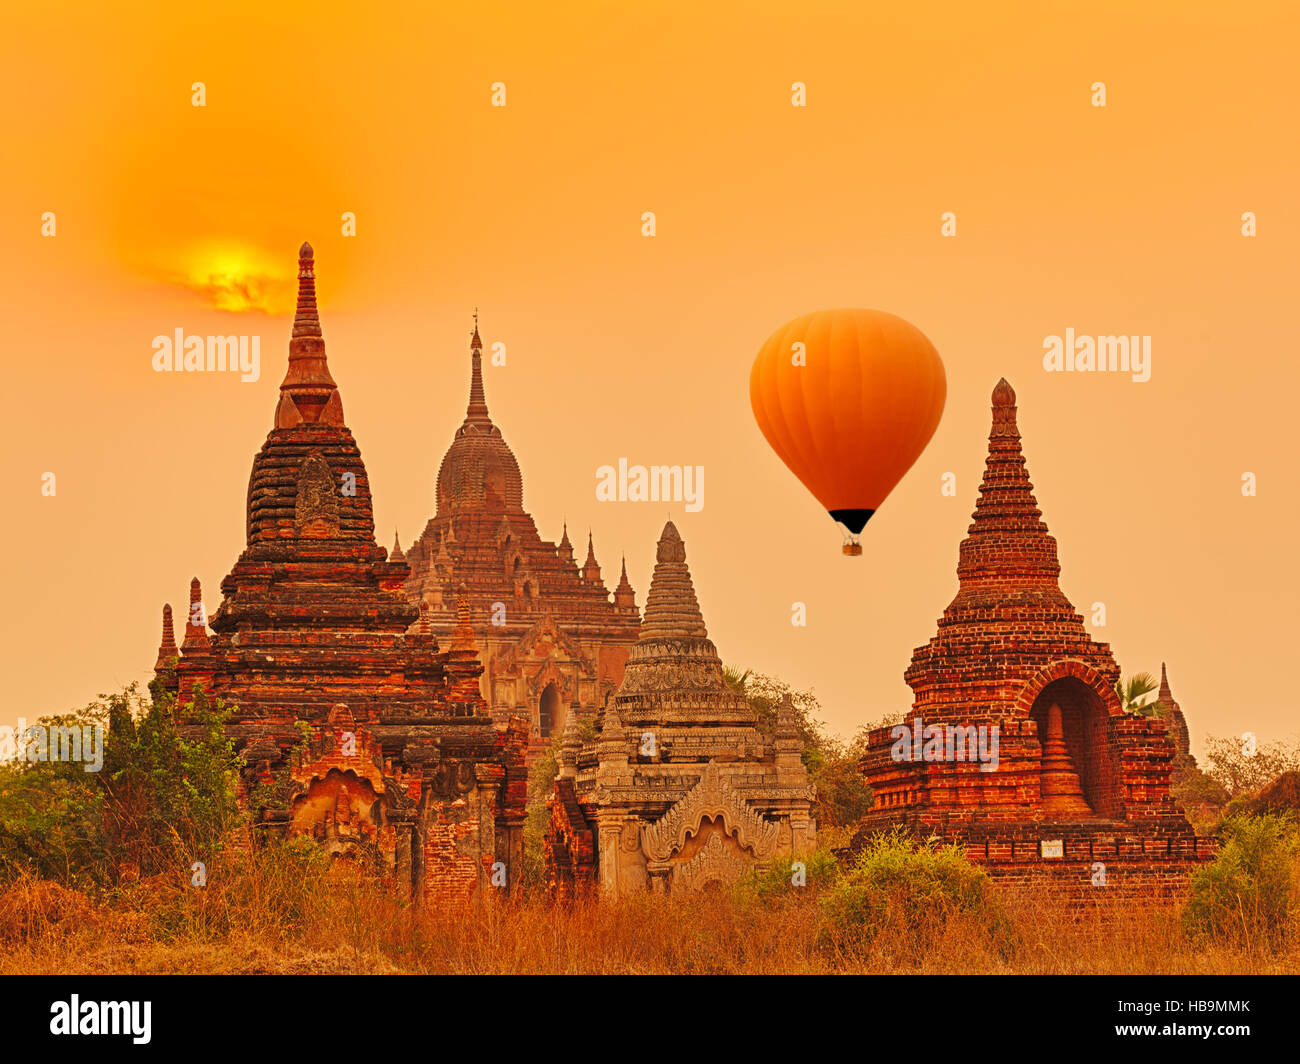 Htilominlo Temple in Bagan. Myanmar. Stock Photo